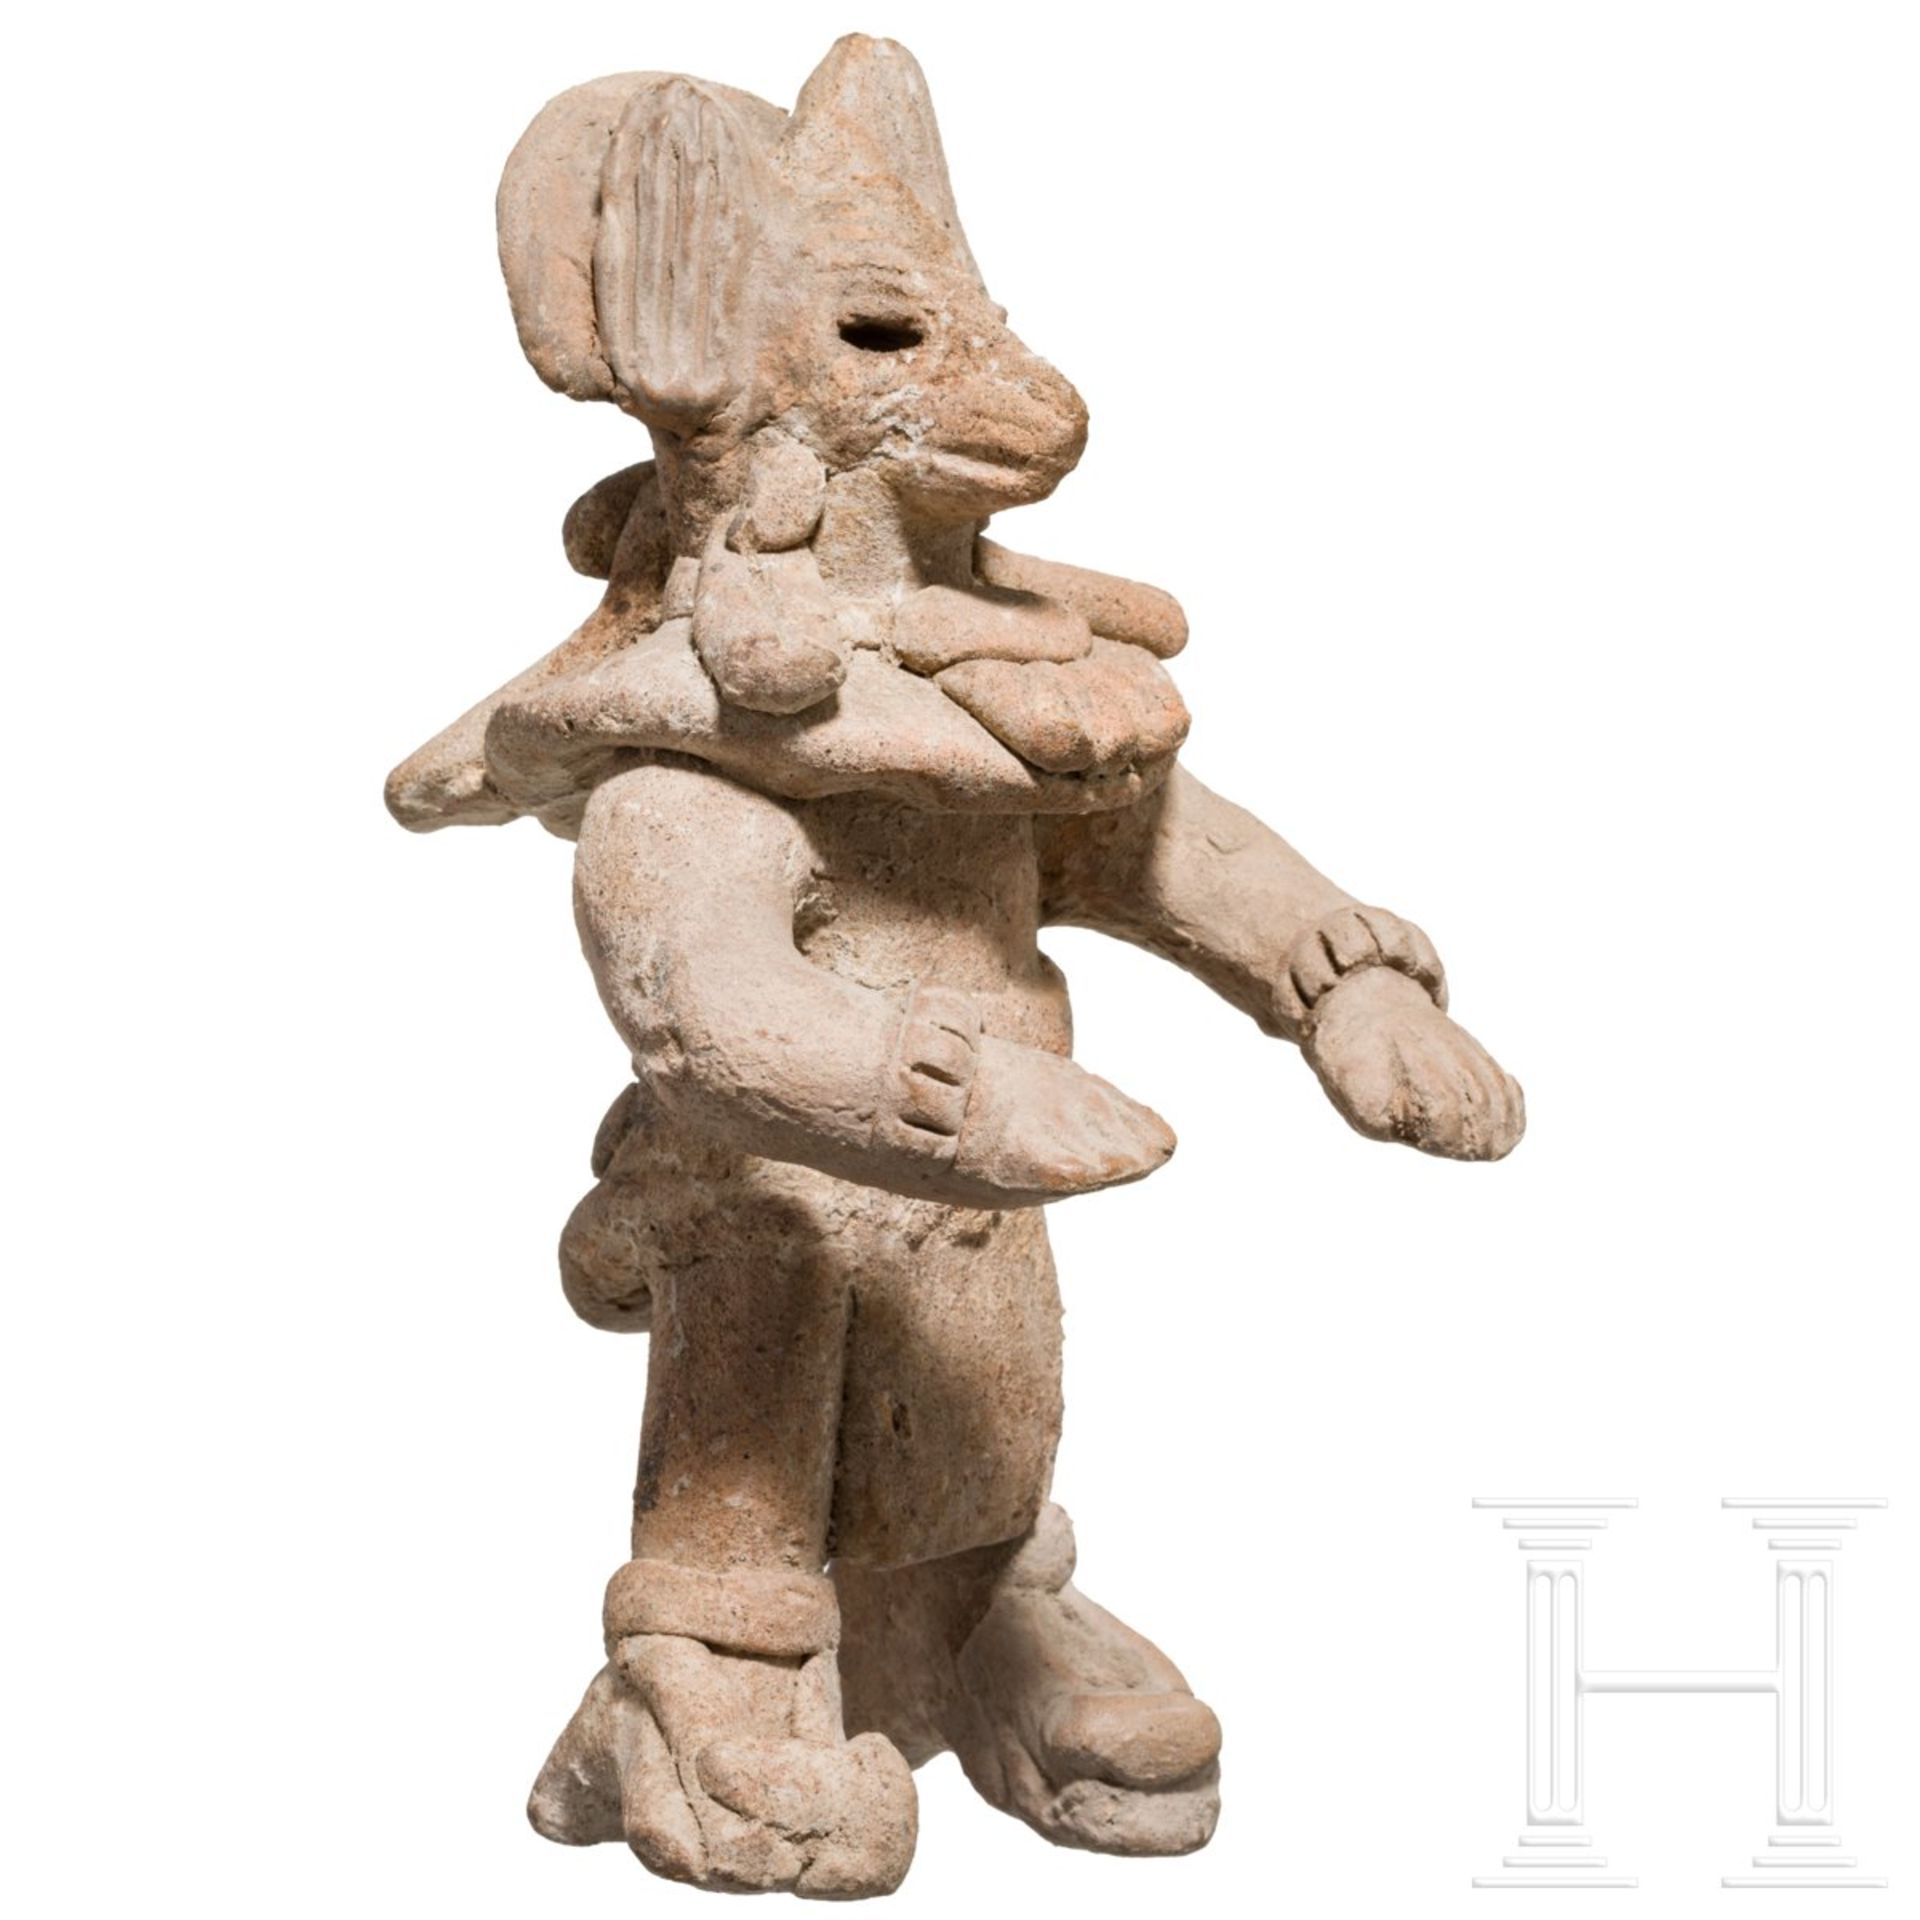 Seltene Terrakottafigur mit Koyotenmaske, Mexiko, Veracruz, ca. 900 - 1200 n. Chr. - Image 3 of 5